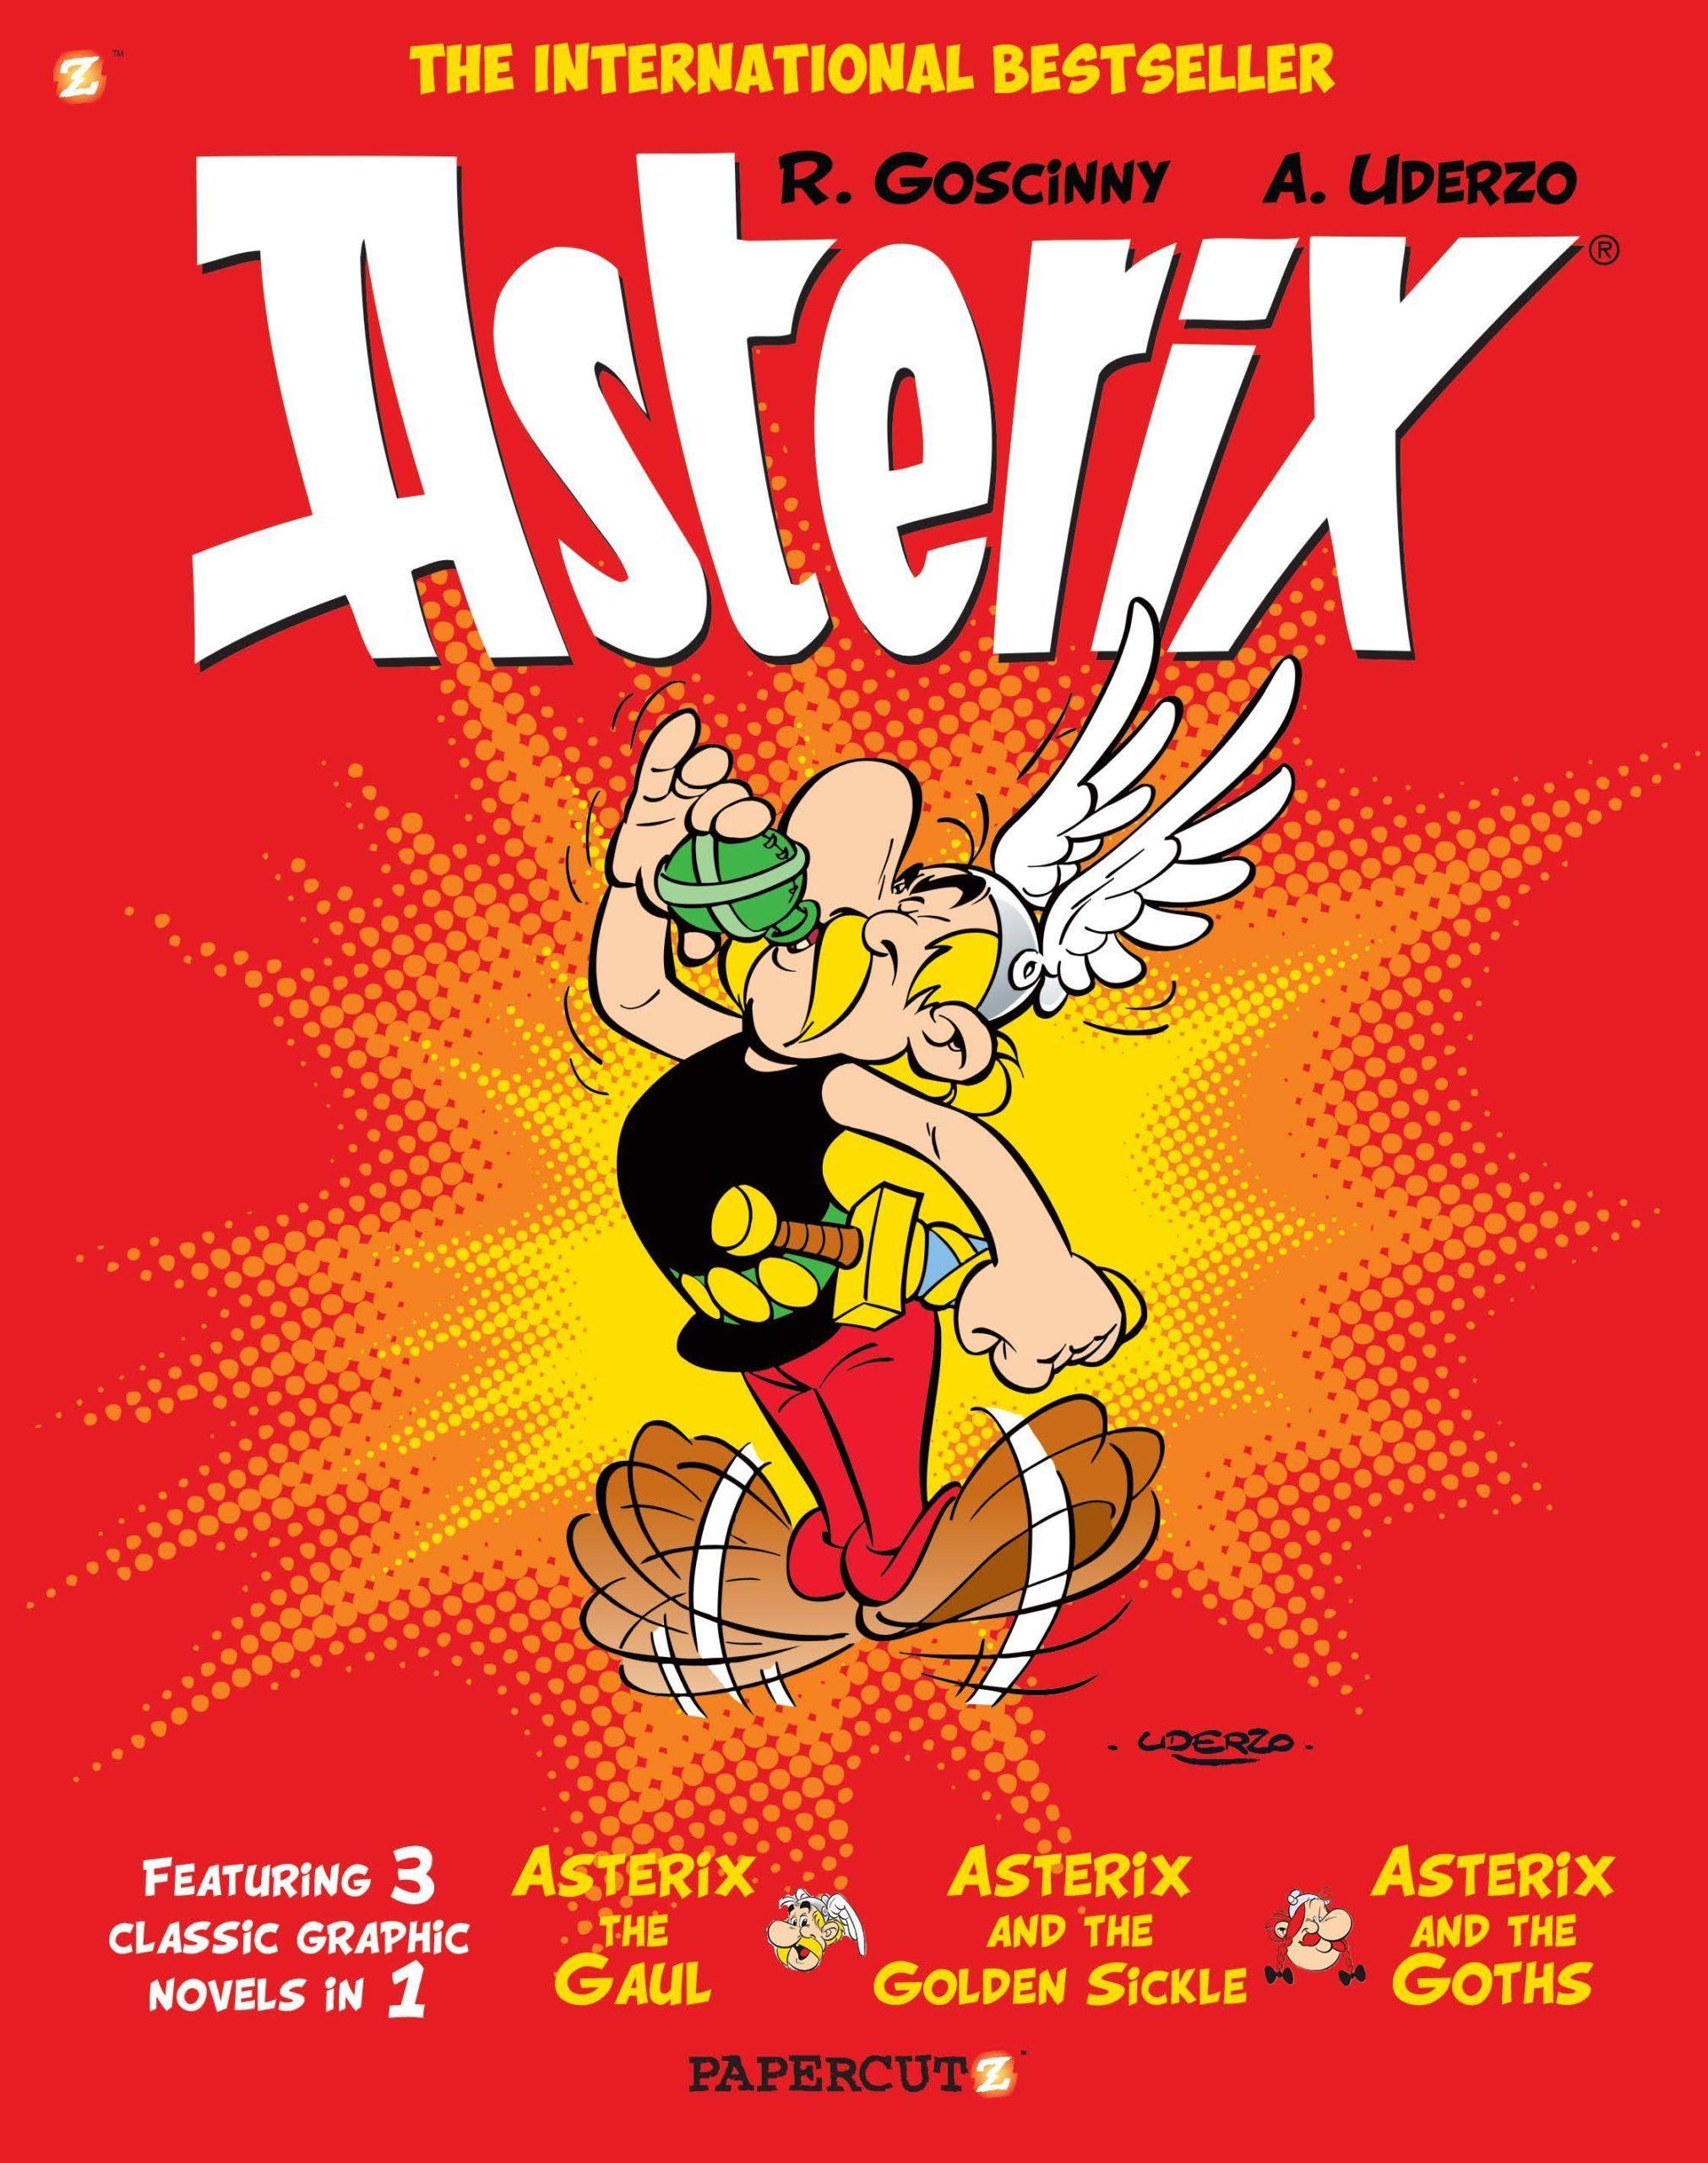 Asterix Omnibus #1 by René Goscinny